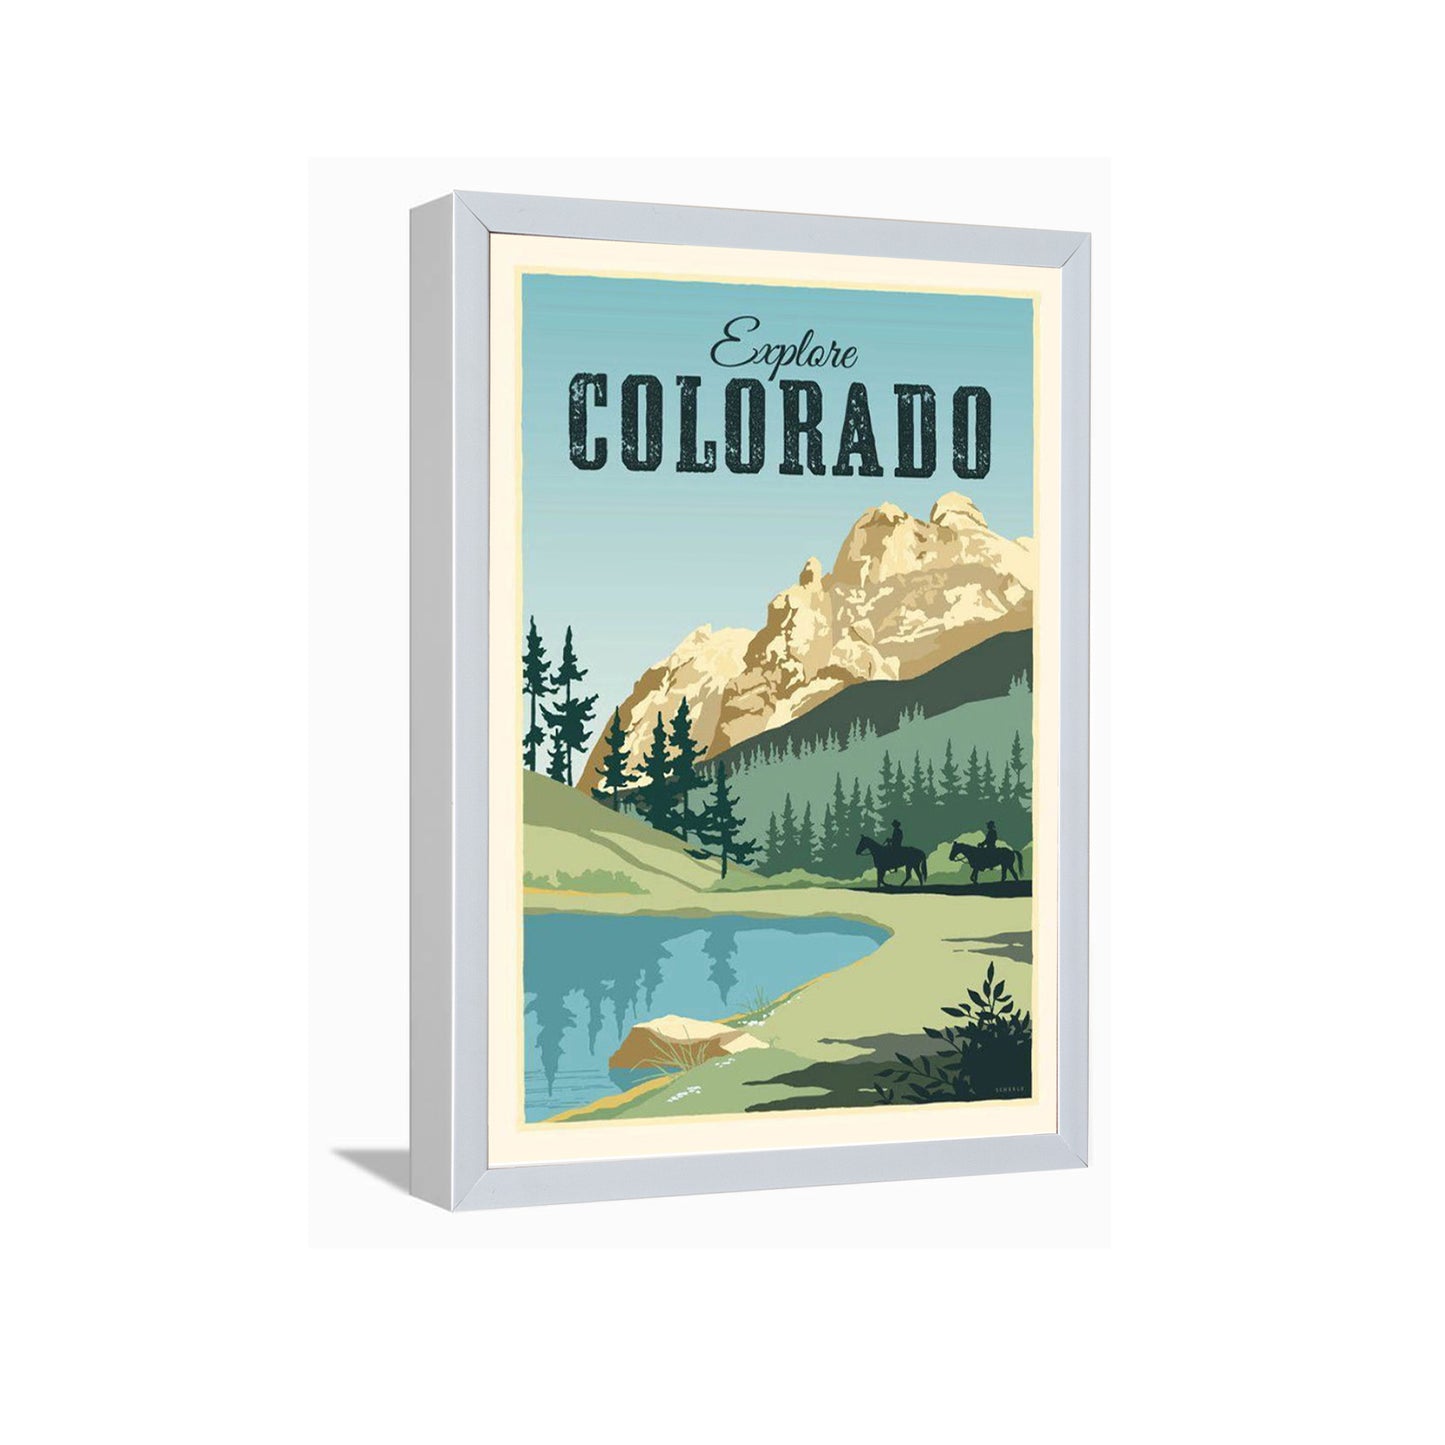 Explore Colorado---